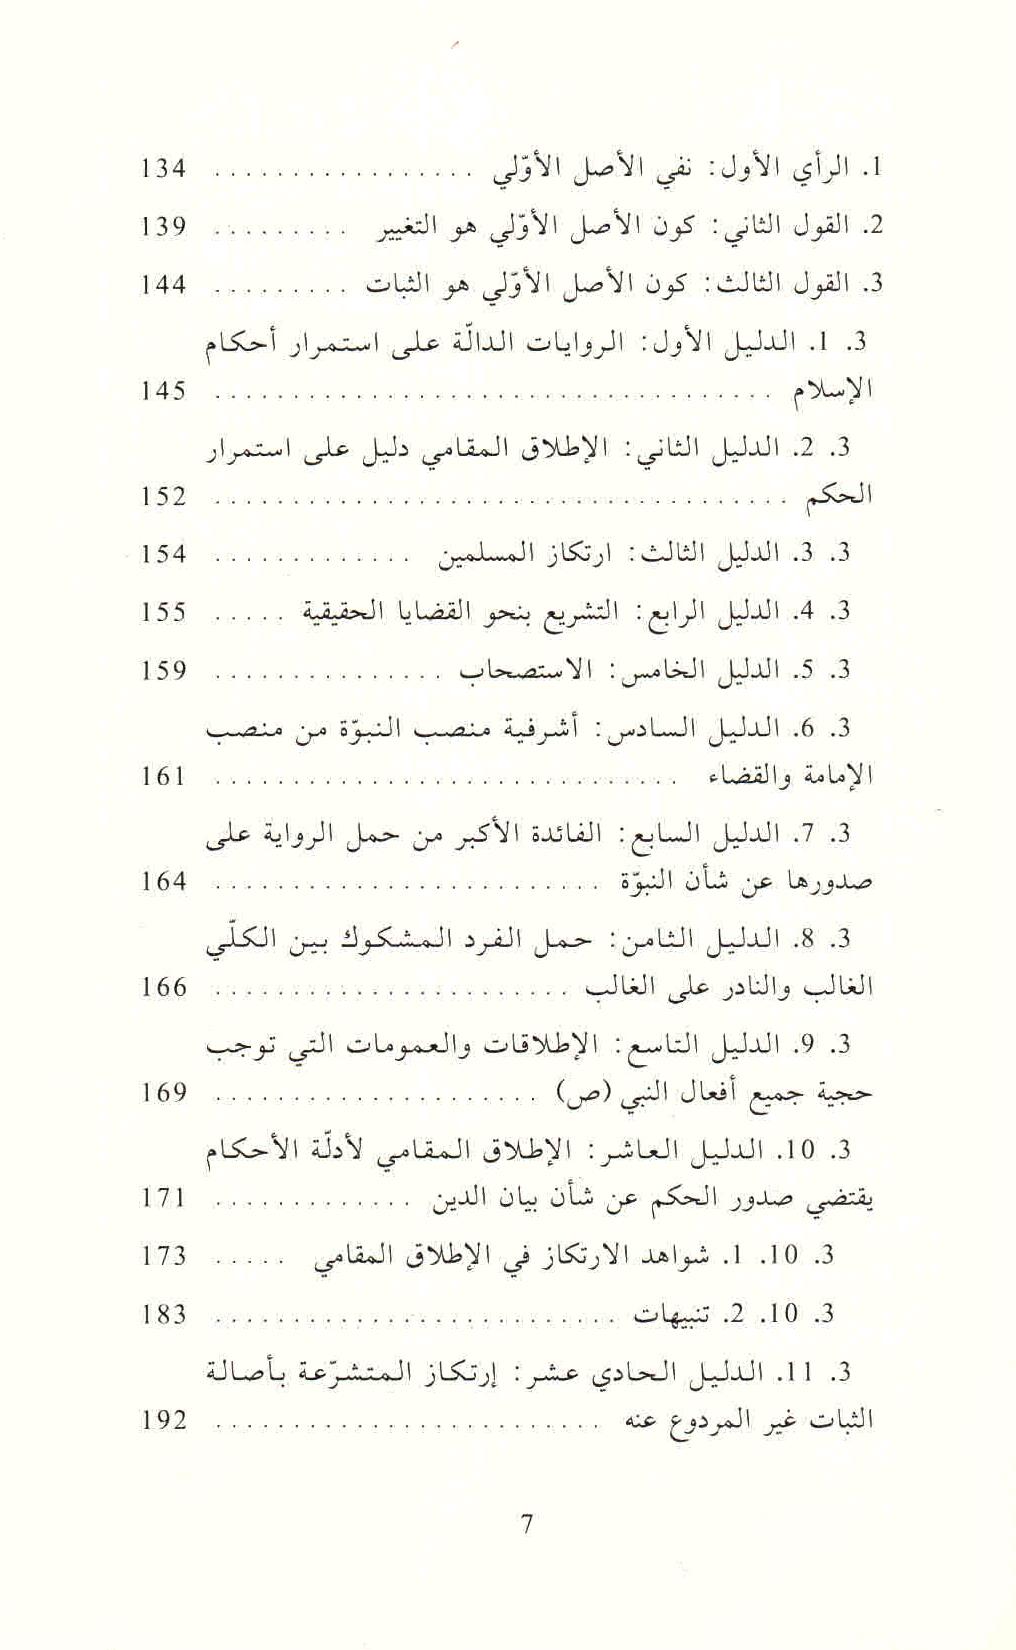 ص. 7 قائمة محتويات كتاب الثابت والمتغير في الأدلة النصية